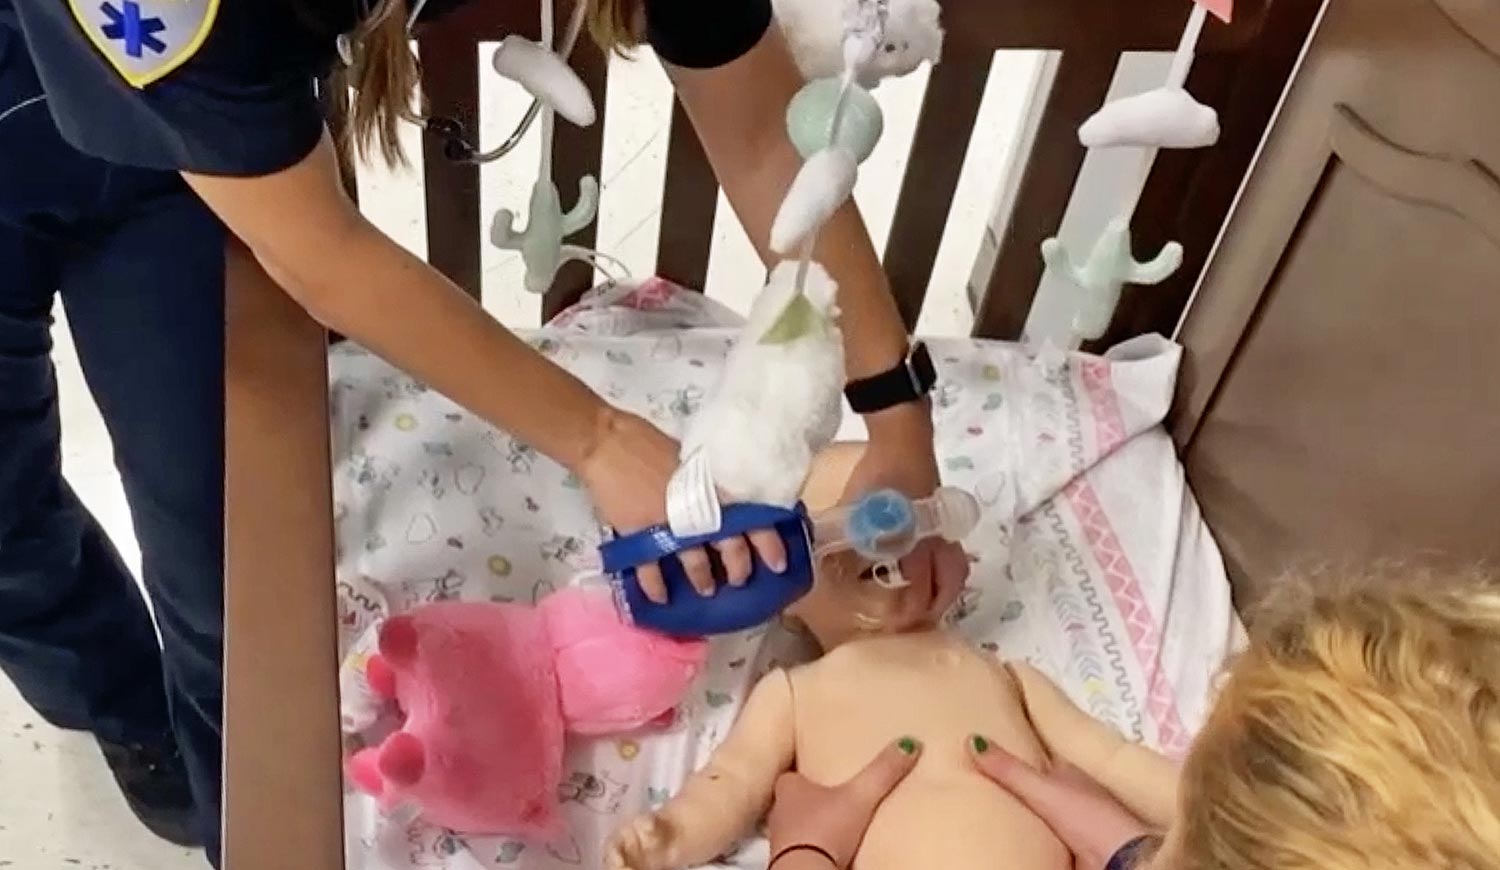 Dans la salle de simulation dédiée aux services médicaux d'urgence de Wake Tech, les étudiants ambulanciers utilisent un masque à oxygène et effectuent une compression thoracique pour réaliser une réanimation cardiorespiratoire sur un mannequin pédiatrique placé dans un berceau.